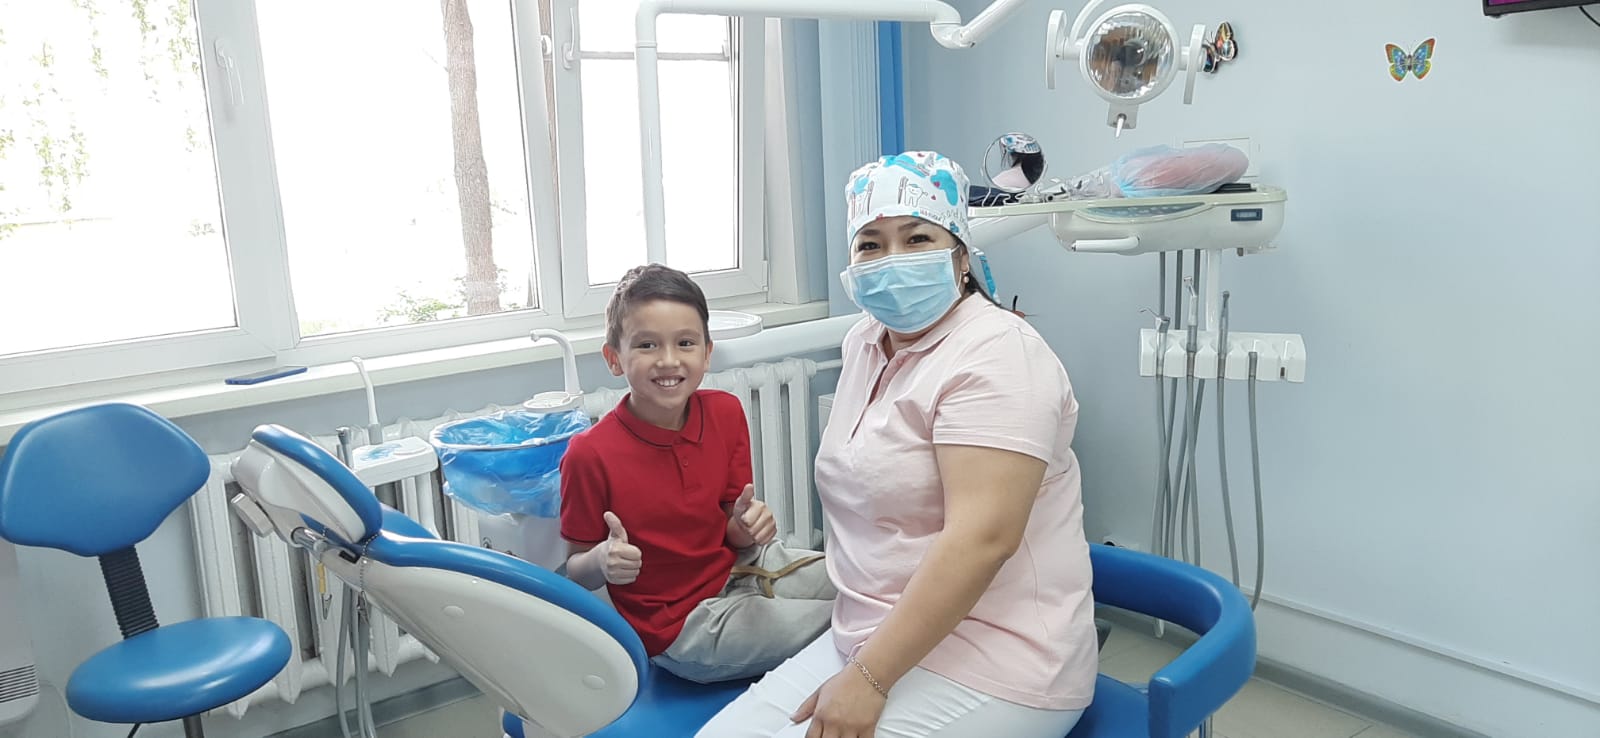 ТОО «EAST SMILE» - новая современная стоматология в г. Усть-Каменогорск